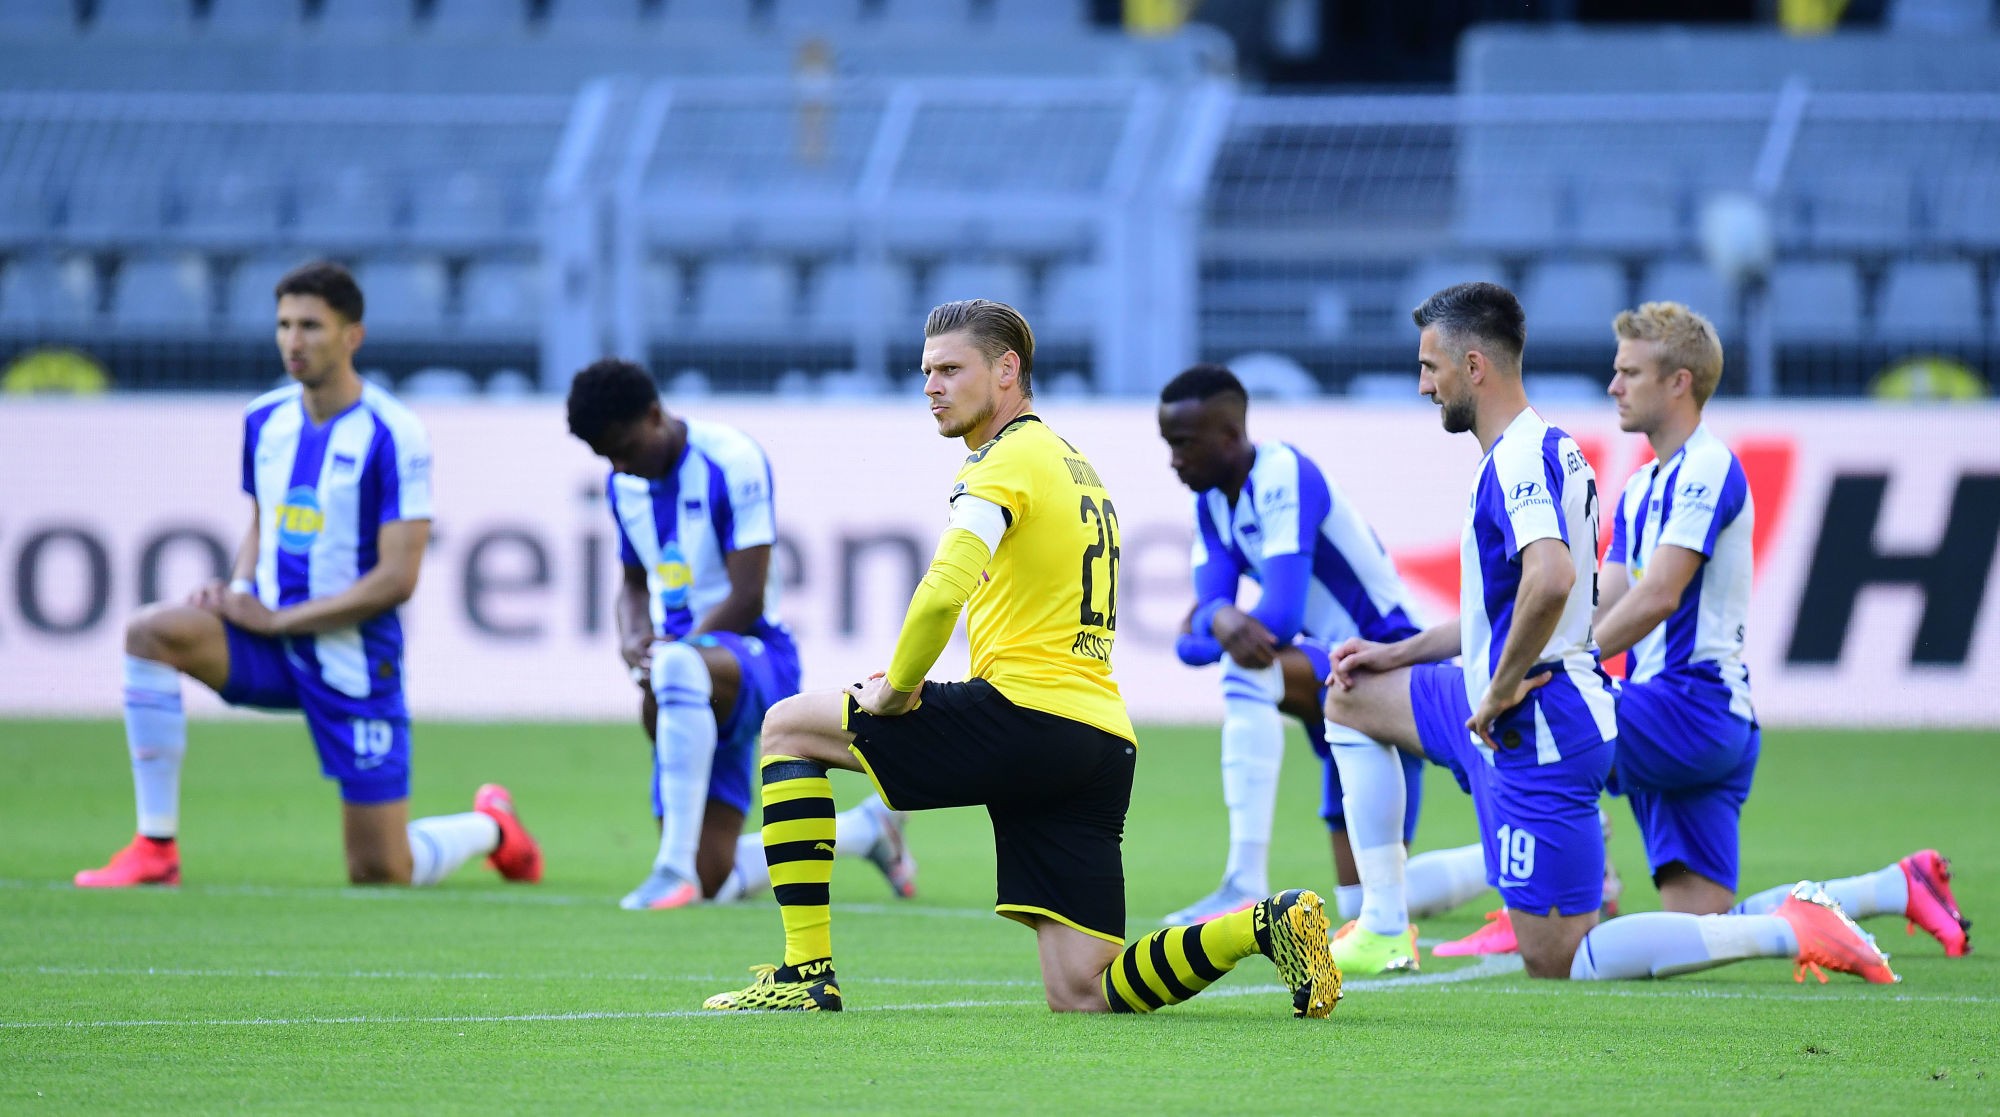 Les joueurs du Borussia Dortmund et du Hertha Berlin genou à terre, en hommage à George Floyd